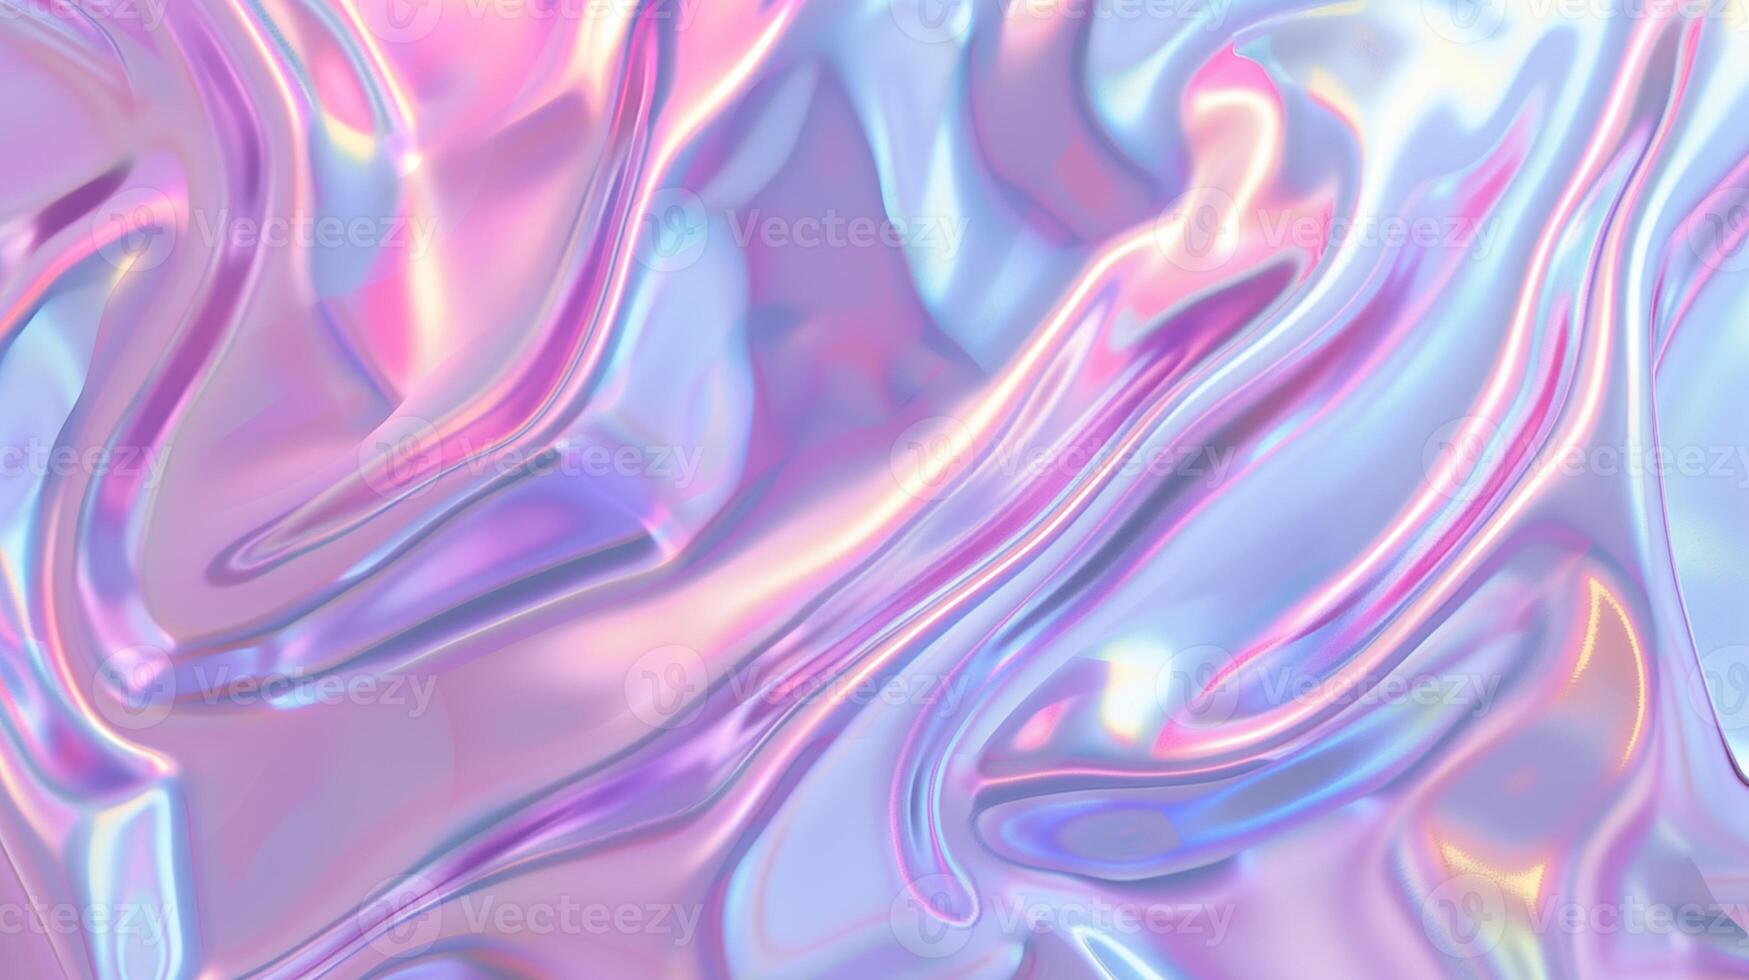 azul e roxa holográfico horizontal abstrato borrado iridescente gradiente fundo foto